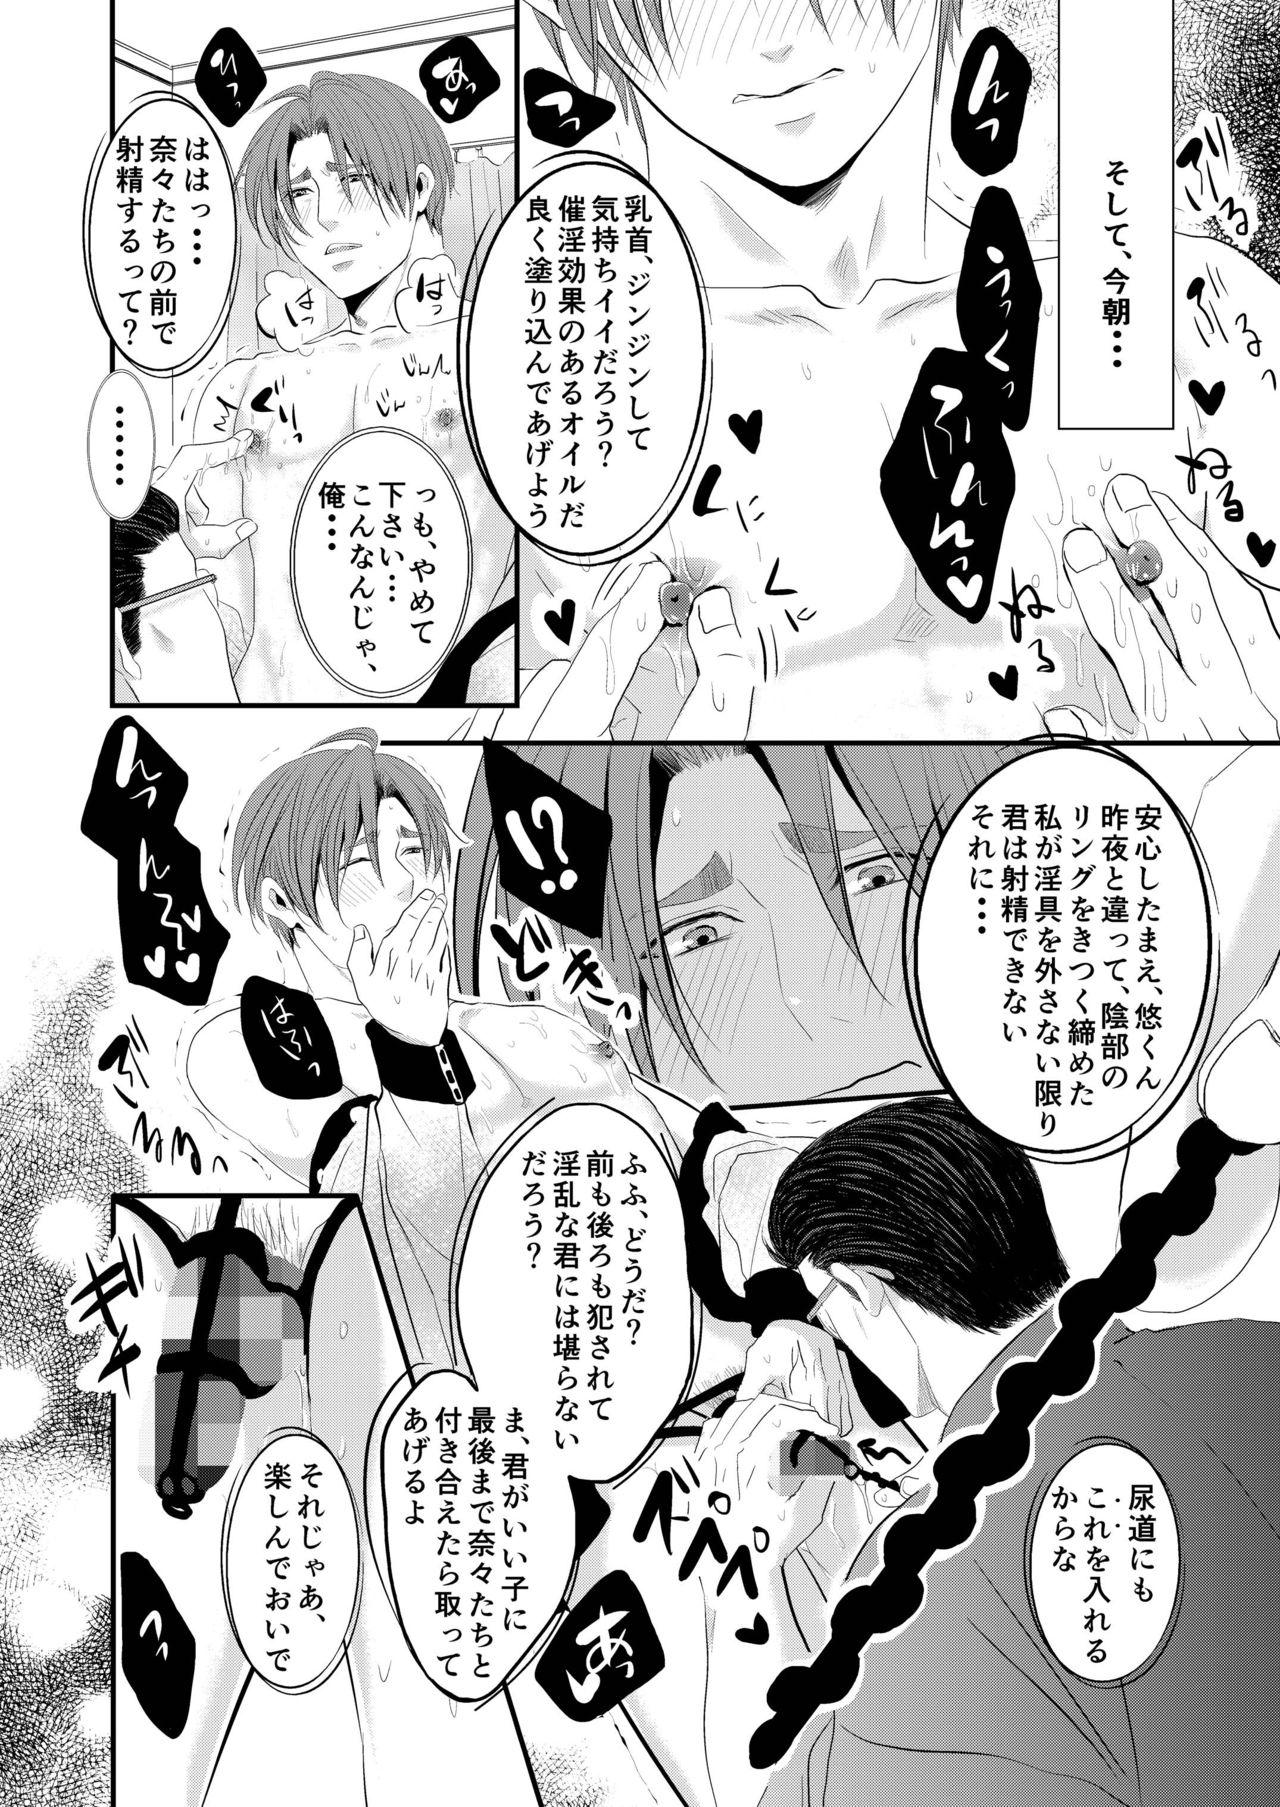 Tiny Titties Kono ai wa Yamai ni Nite iru 3 Amigo - Page 7